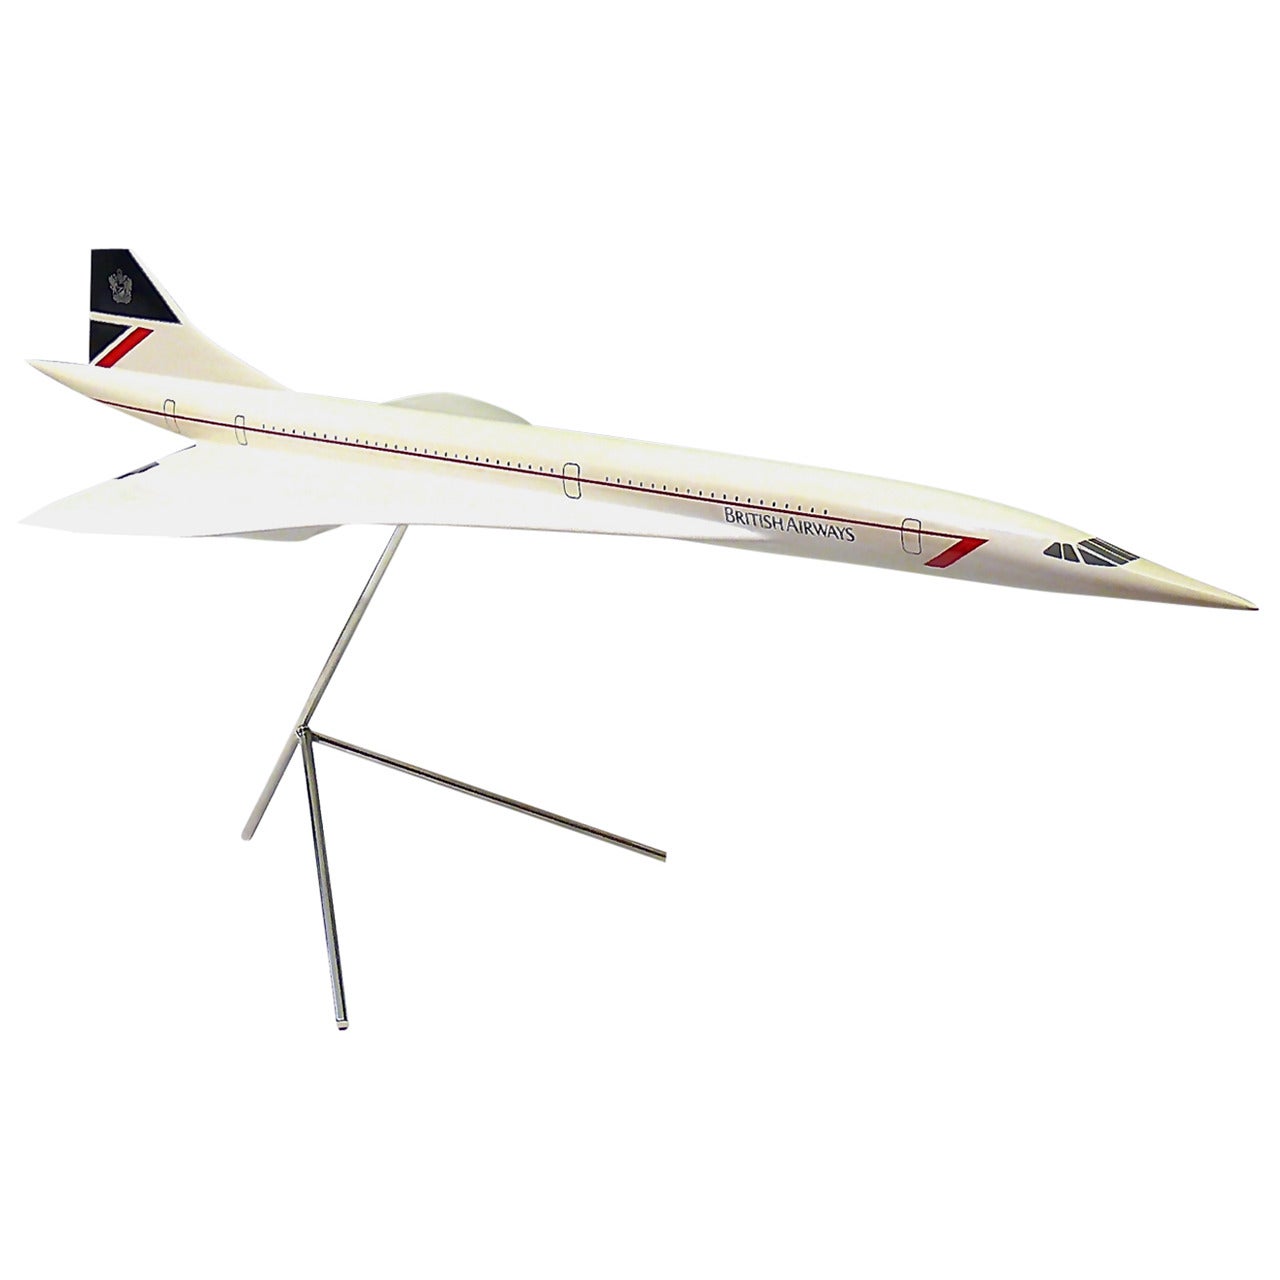 Splendid 1980s Concorde Model